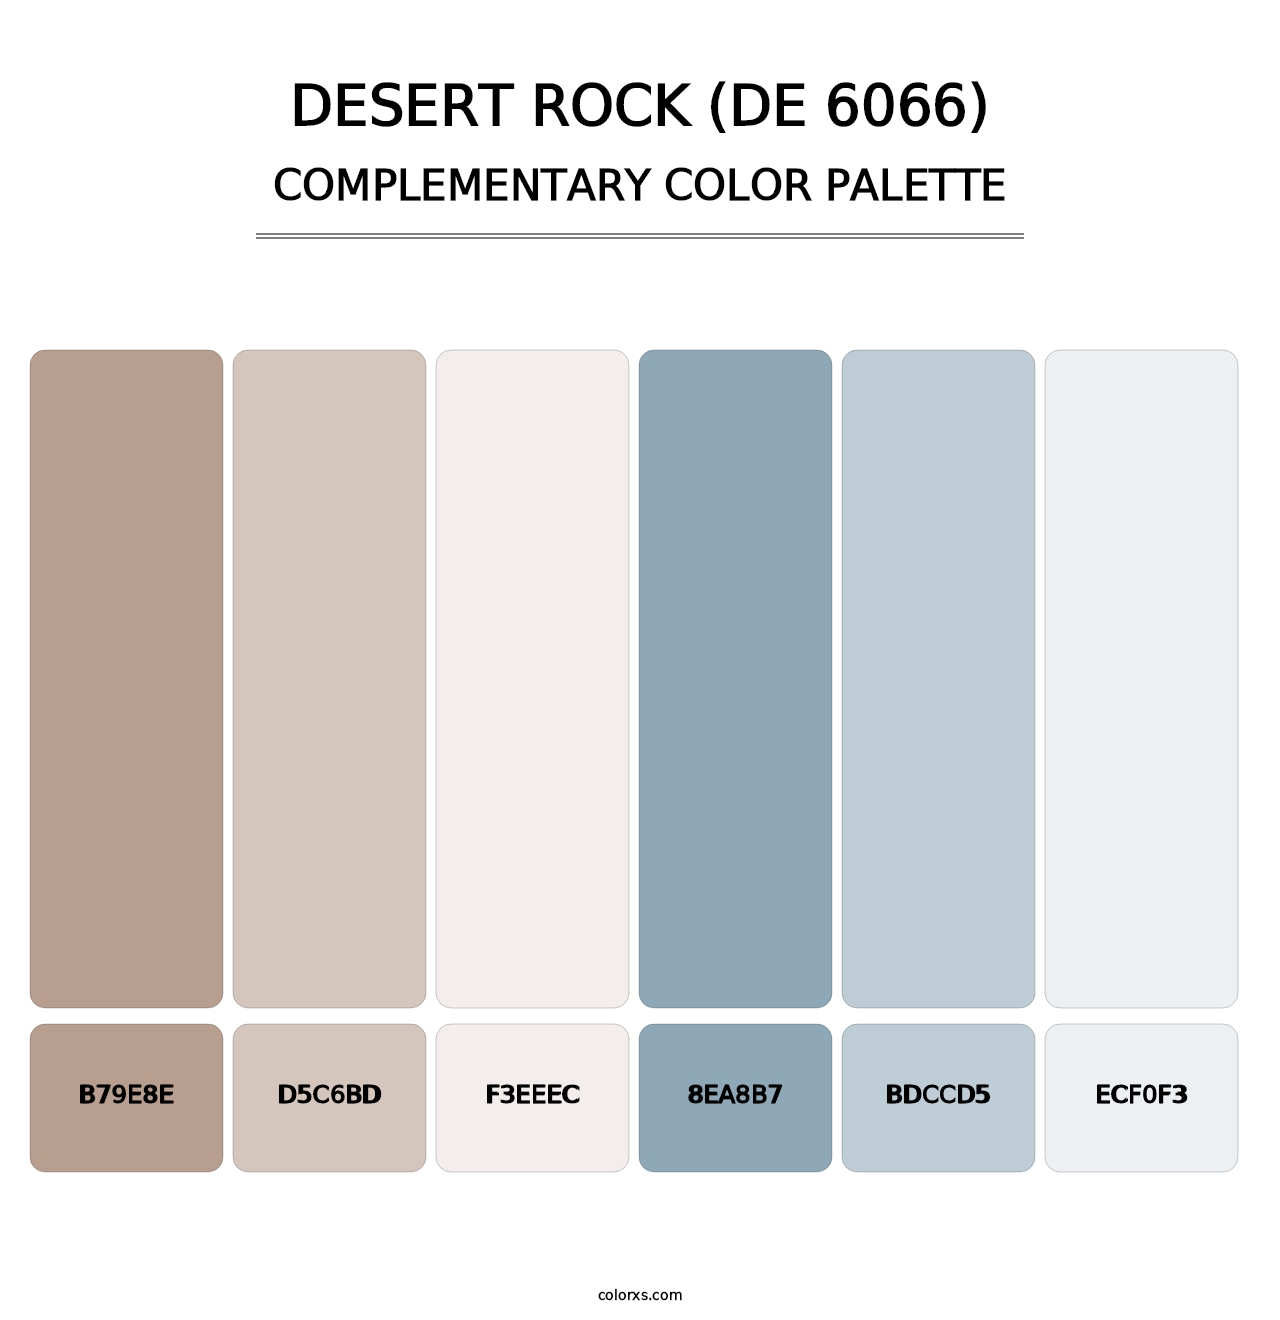 Desert Rock (DE 6066) - Complementary Color Palette